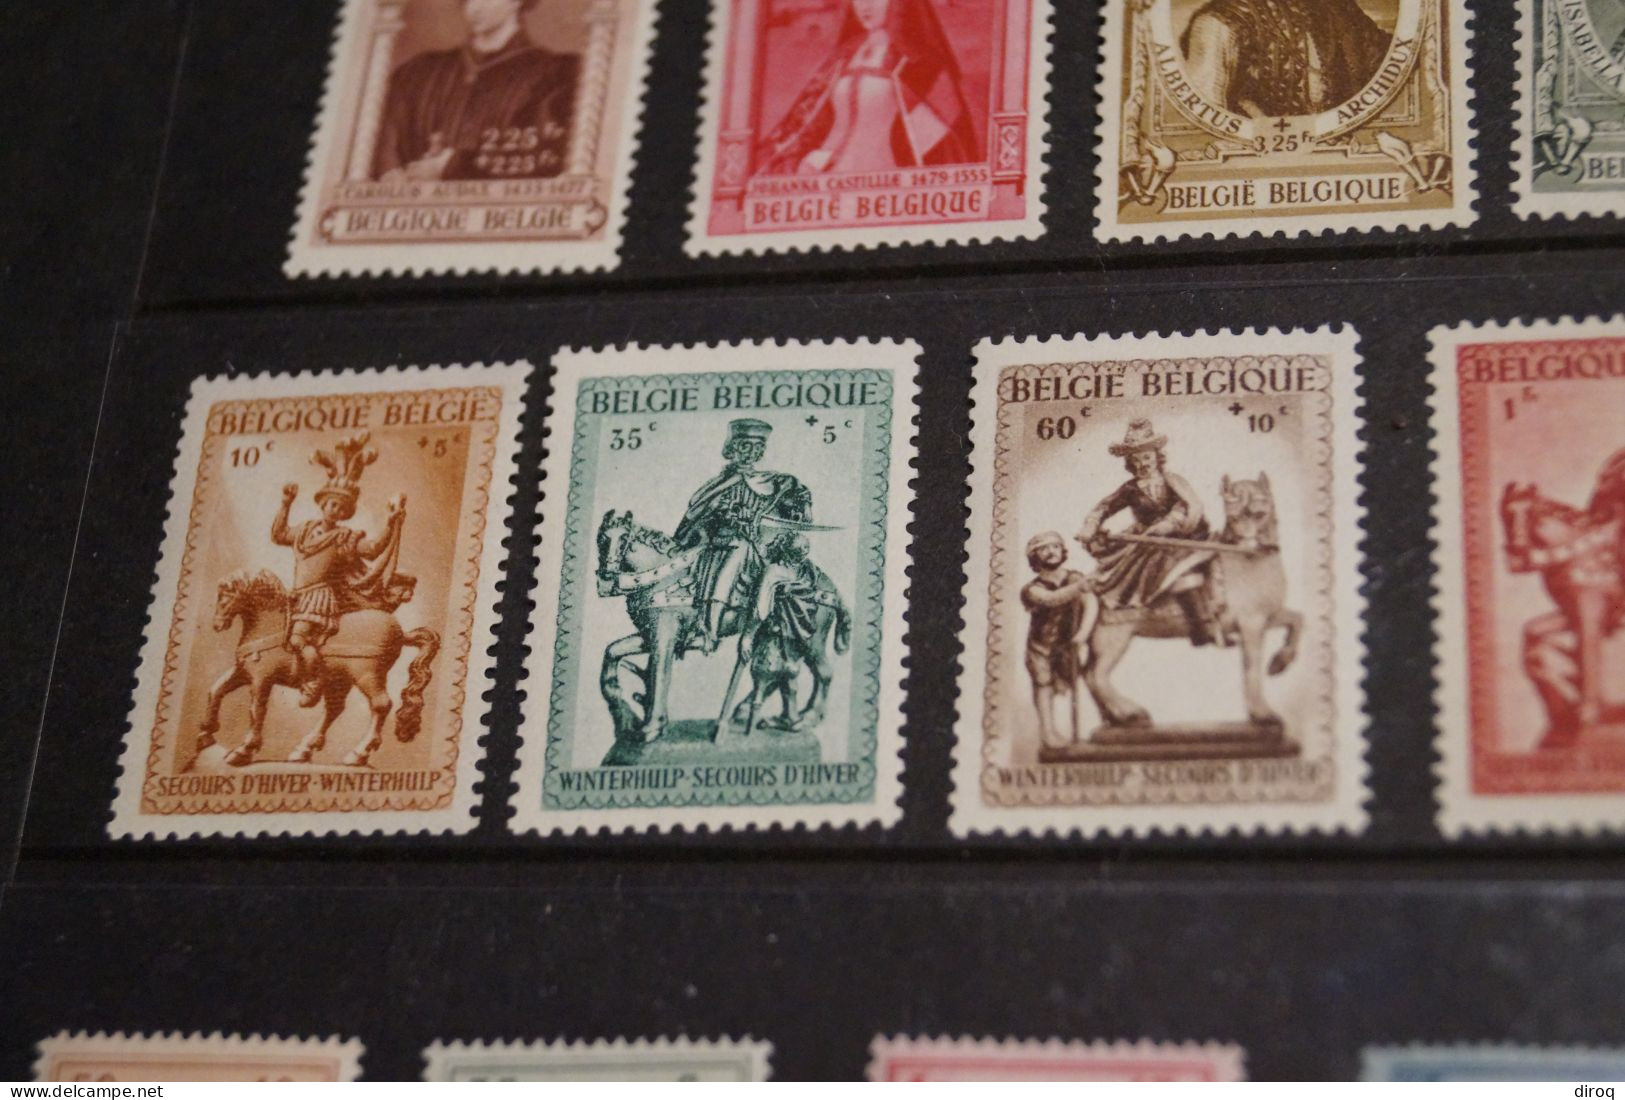 Belle collection de 32 timbres,état strictement neuf,collection,à identifier